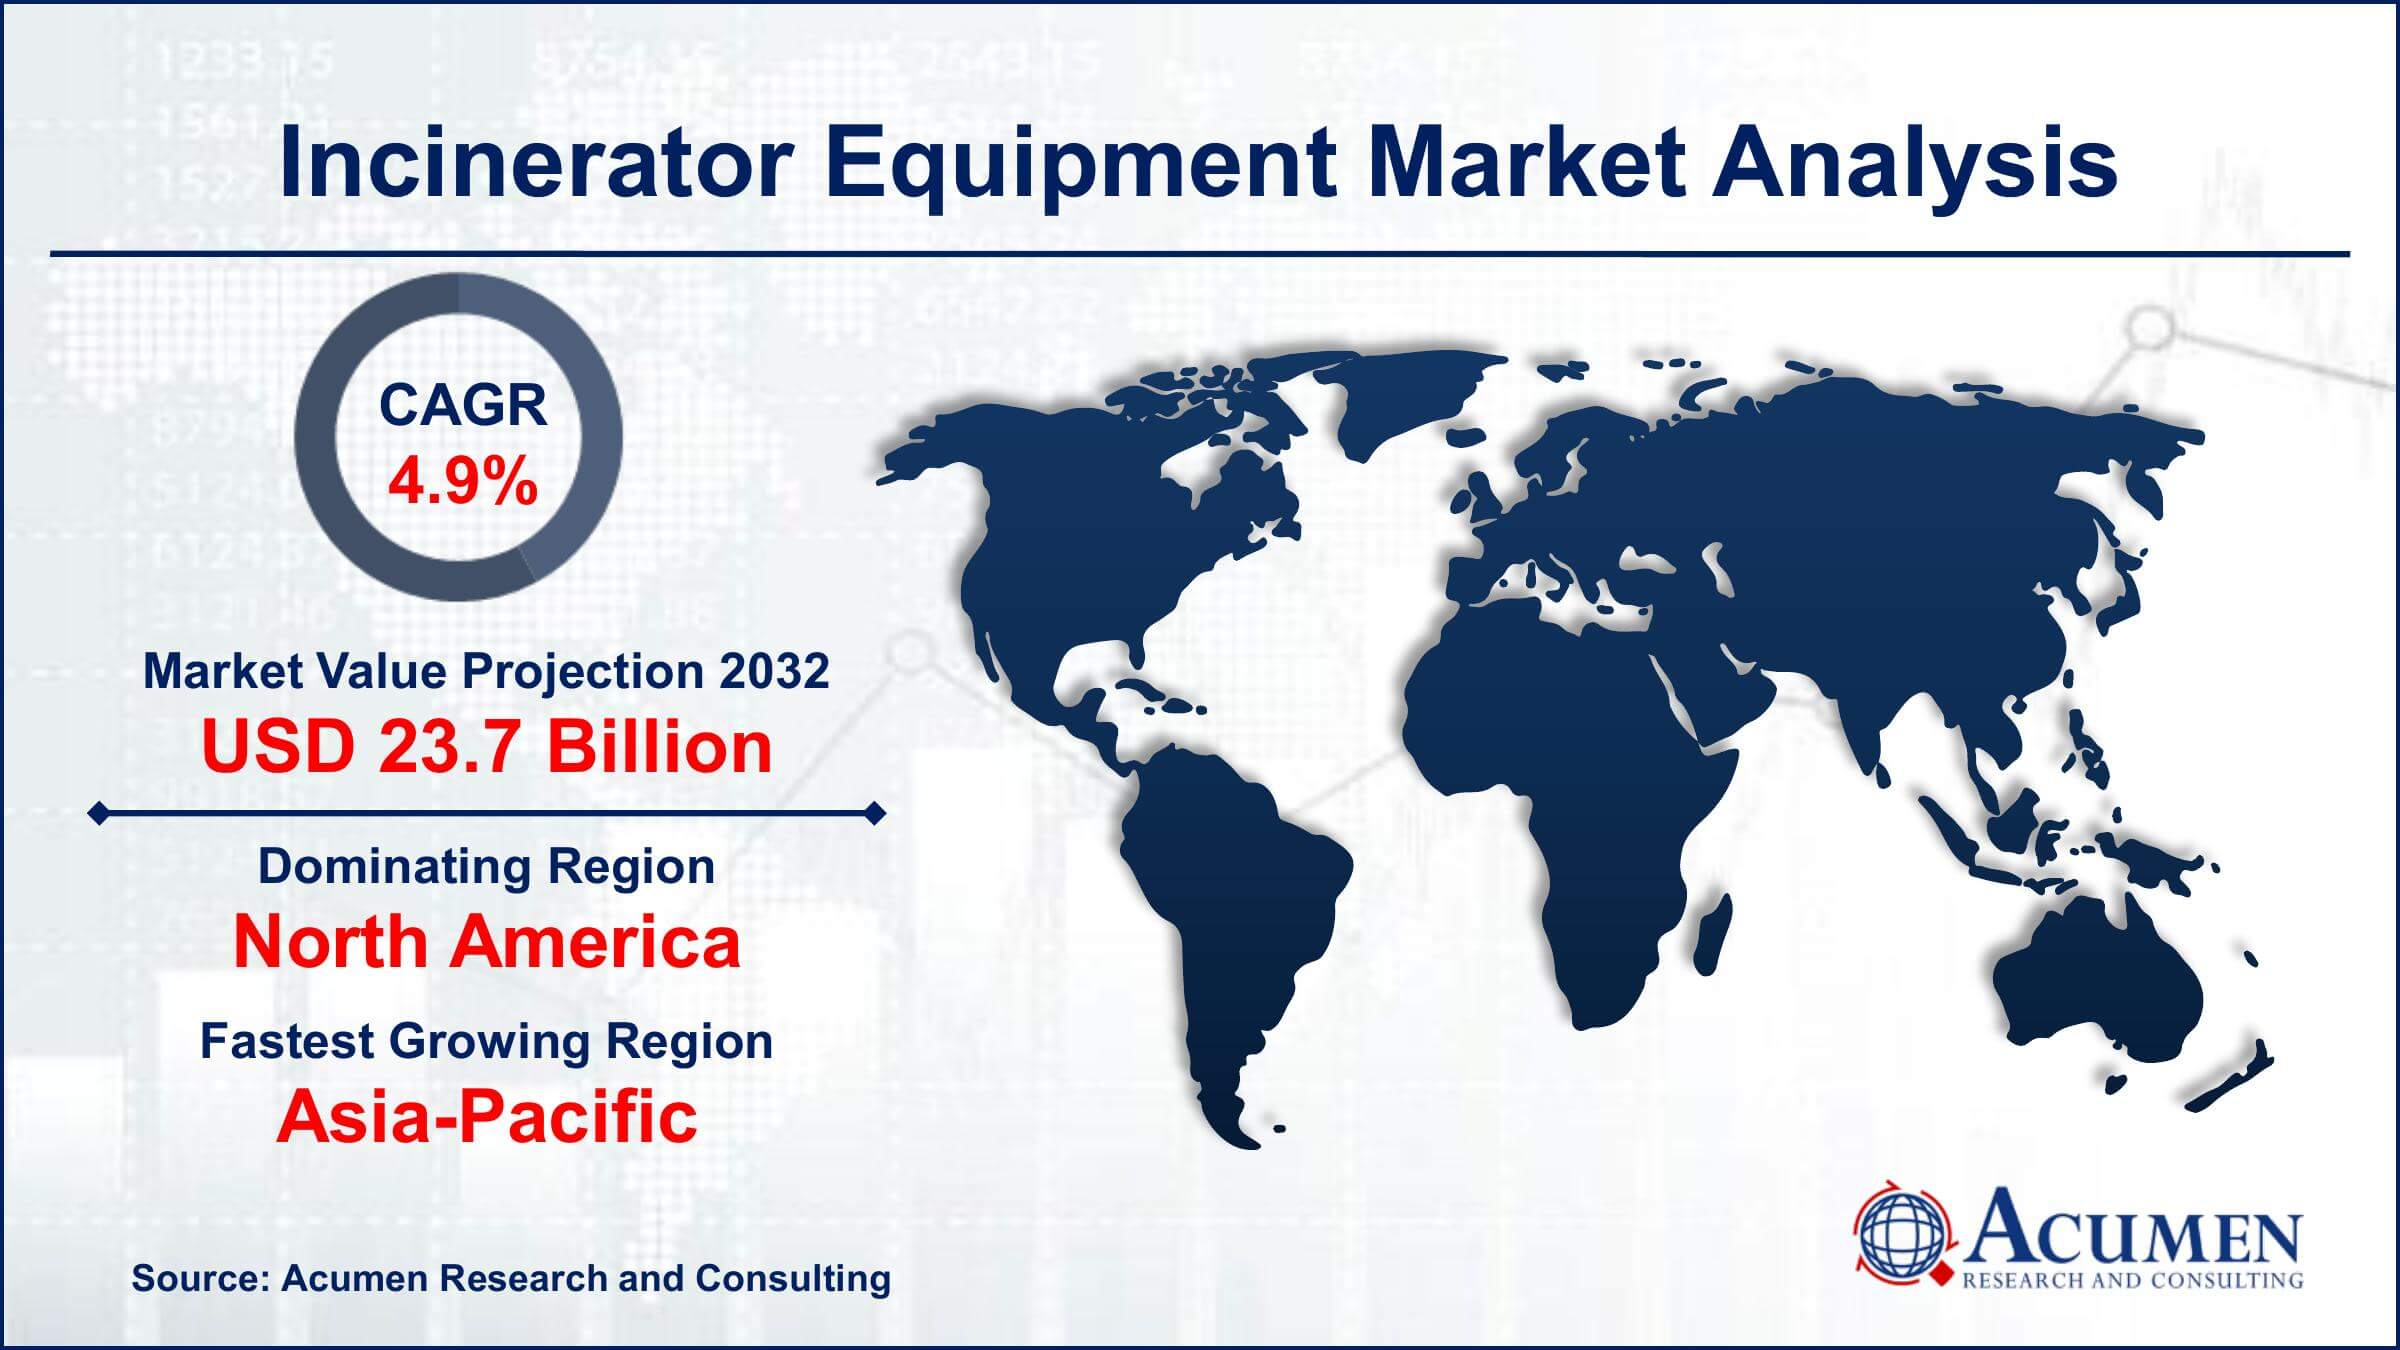 Global Incinerator Equipment Market Trends